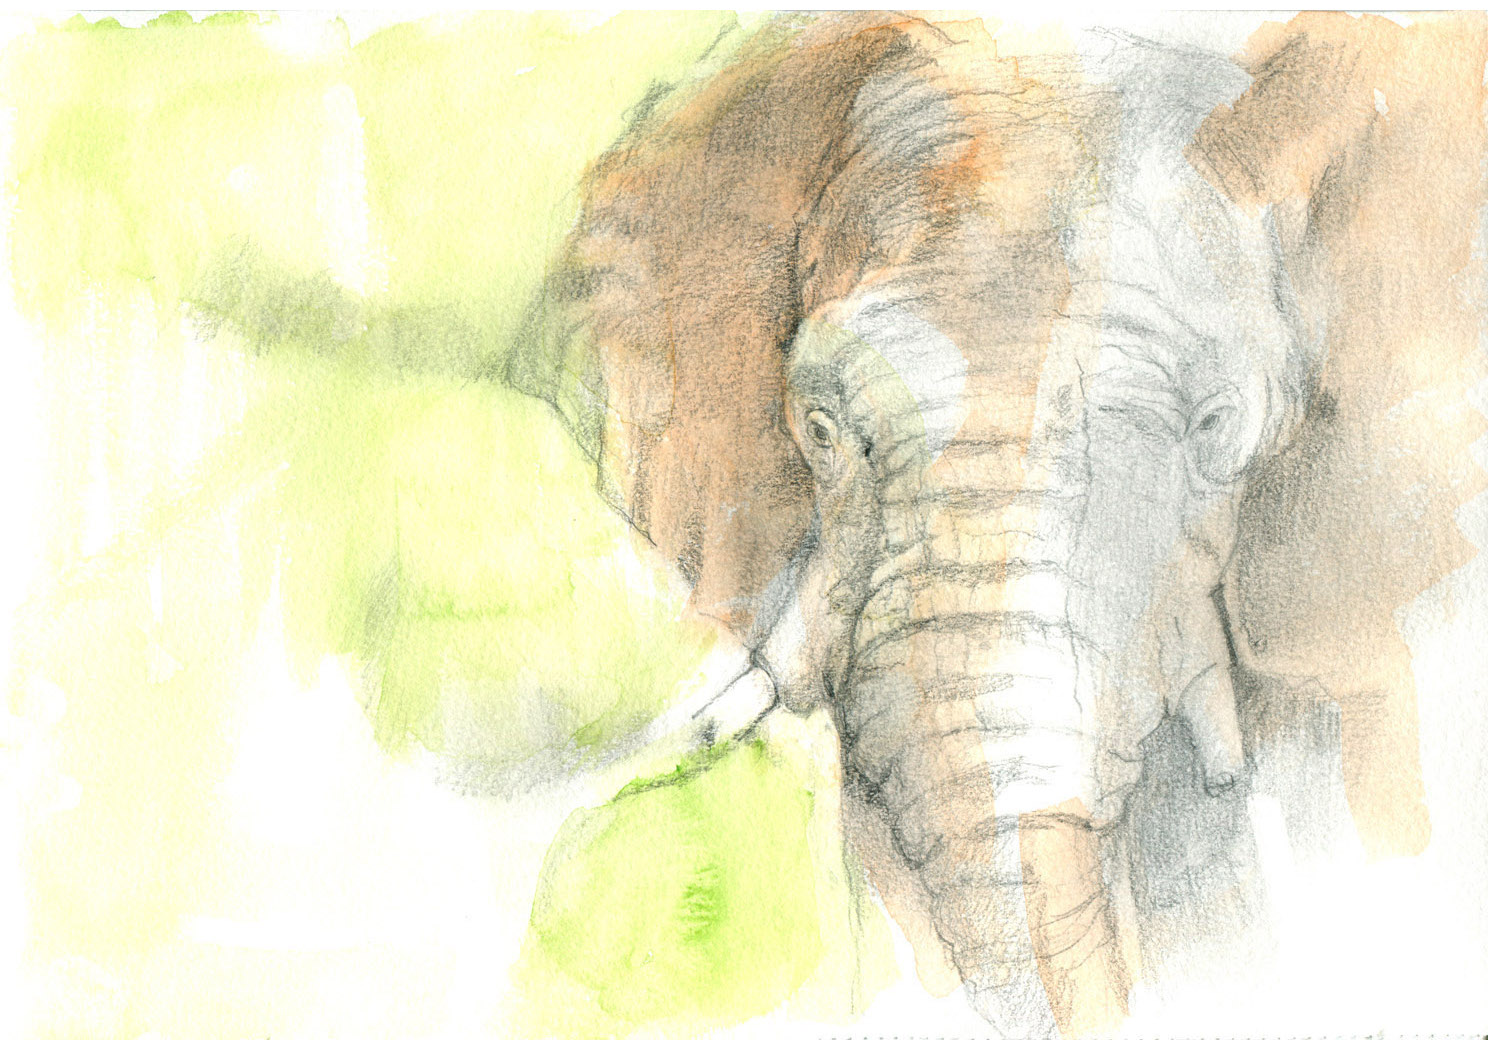 Elefante. Acuarela y grafito. 21 x 29,7 cm